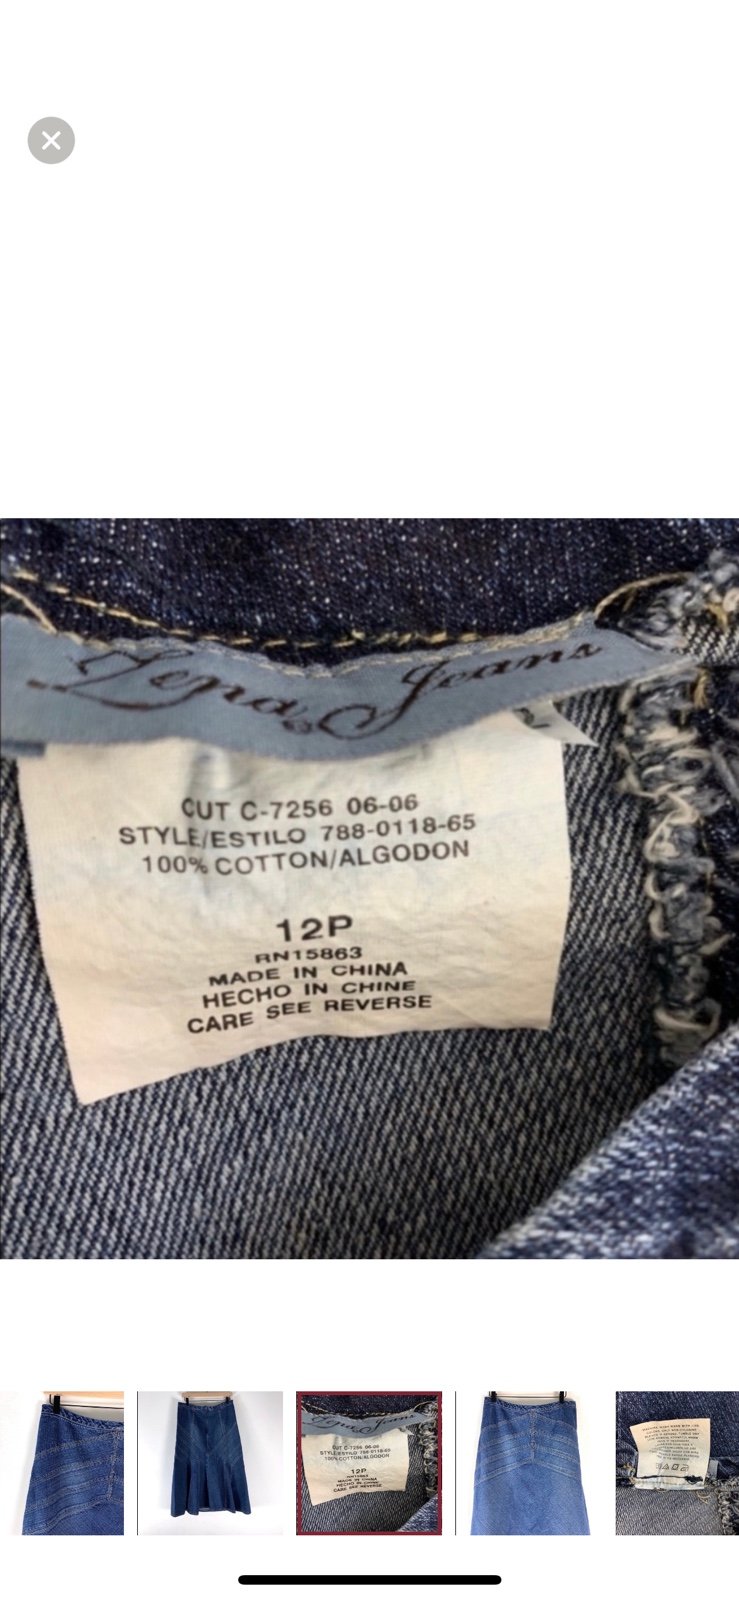 Discounted Vintage Zena Jeans Denim Maxi Skirt Y2K 100% Cotton Dark Blue size 12 G6R02ZpPY High Quaity